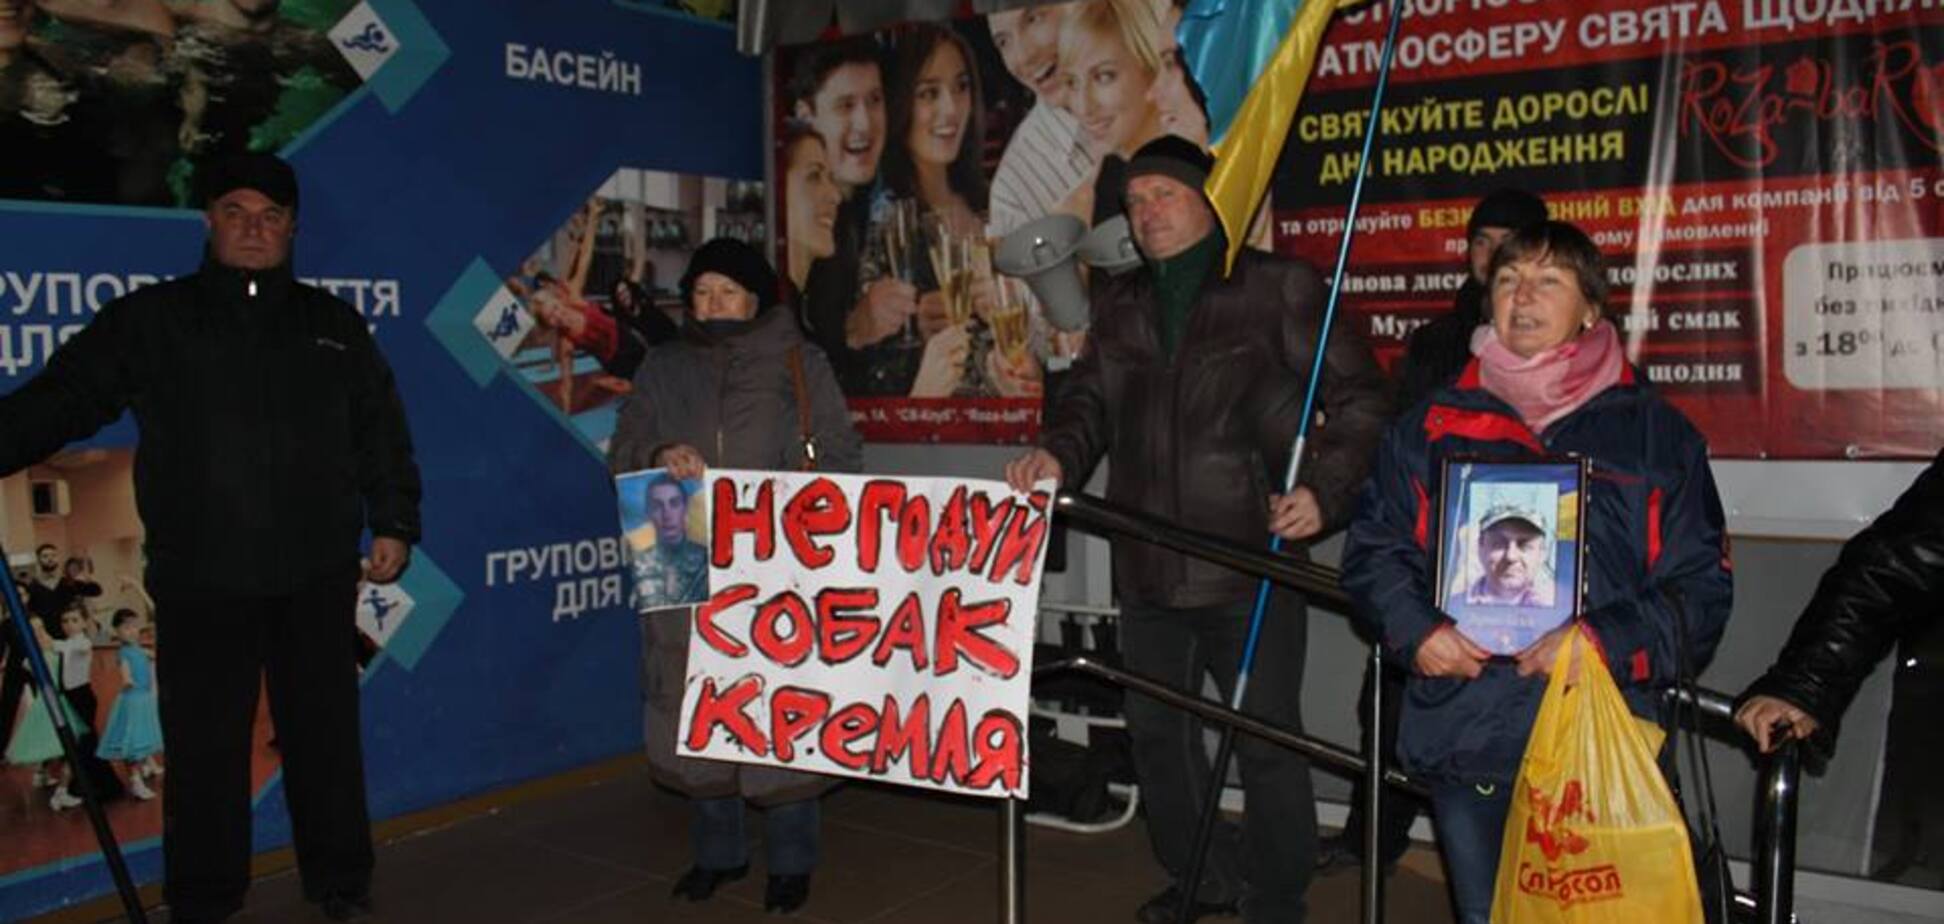 Следующий после Райкина: националисты анонсировали срыв концерта украинской звезды в Одессе